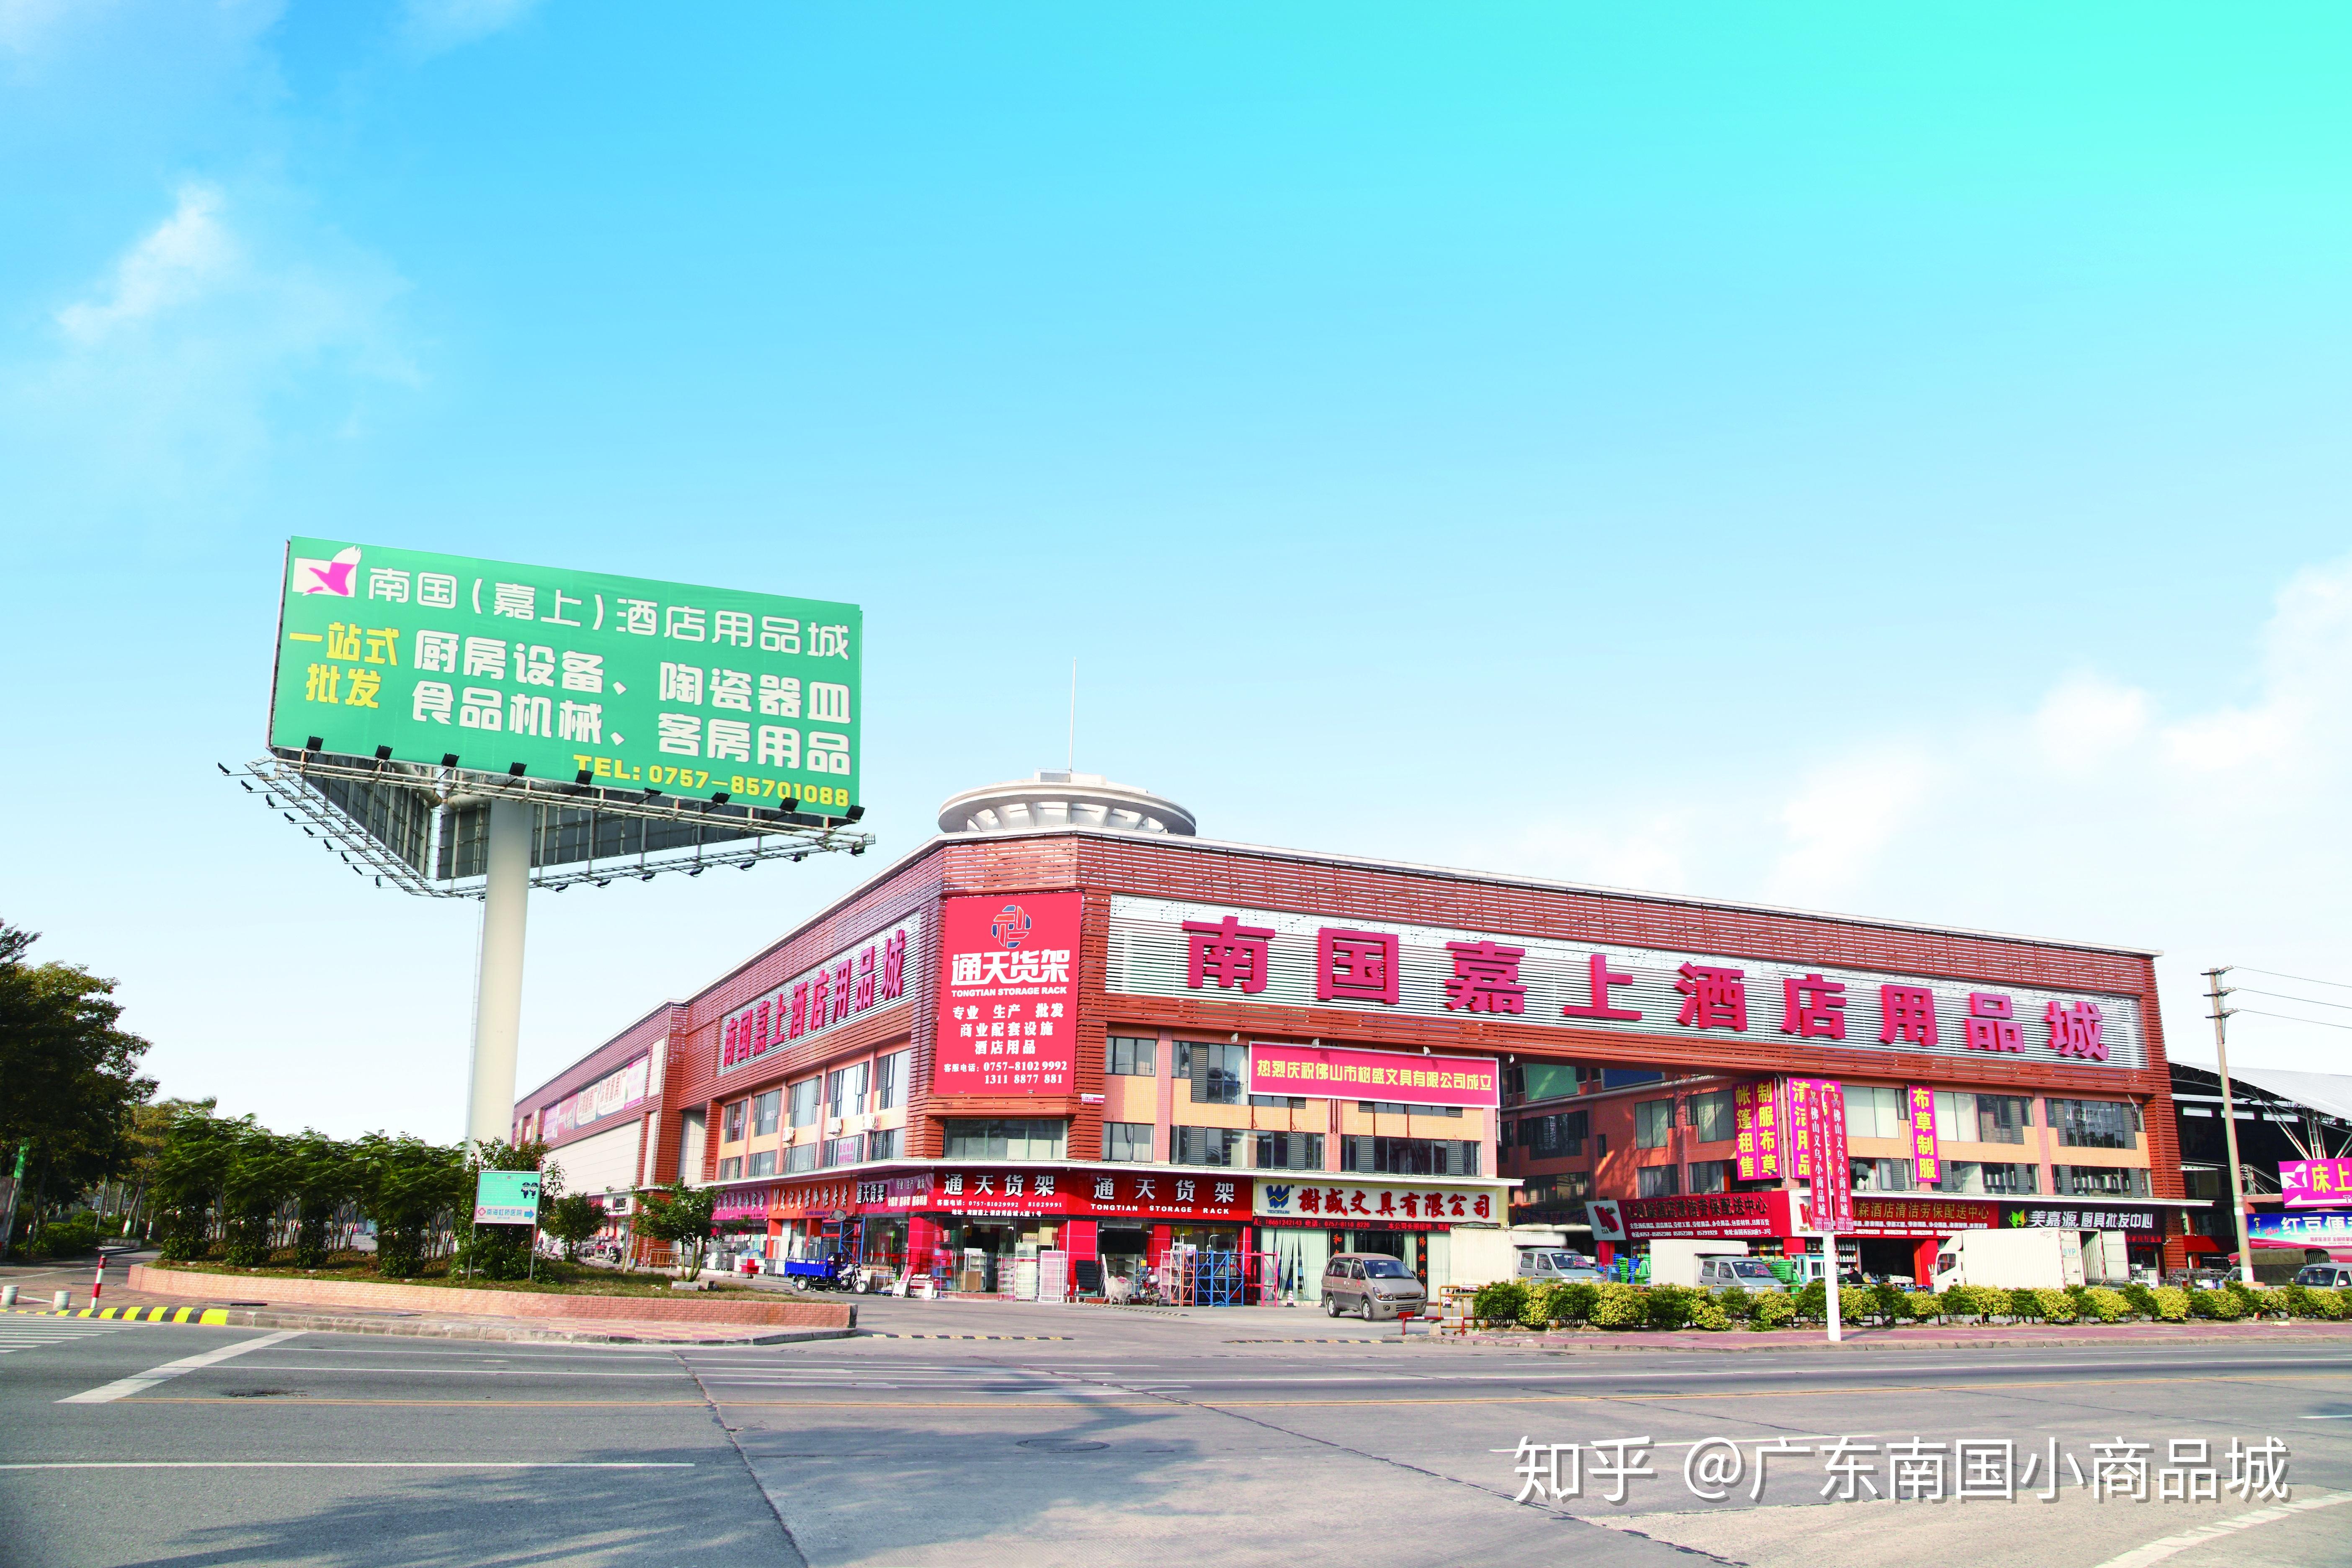 华南地区大型小商品批发市场广东南国小商品城值得一逛